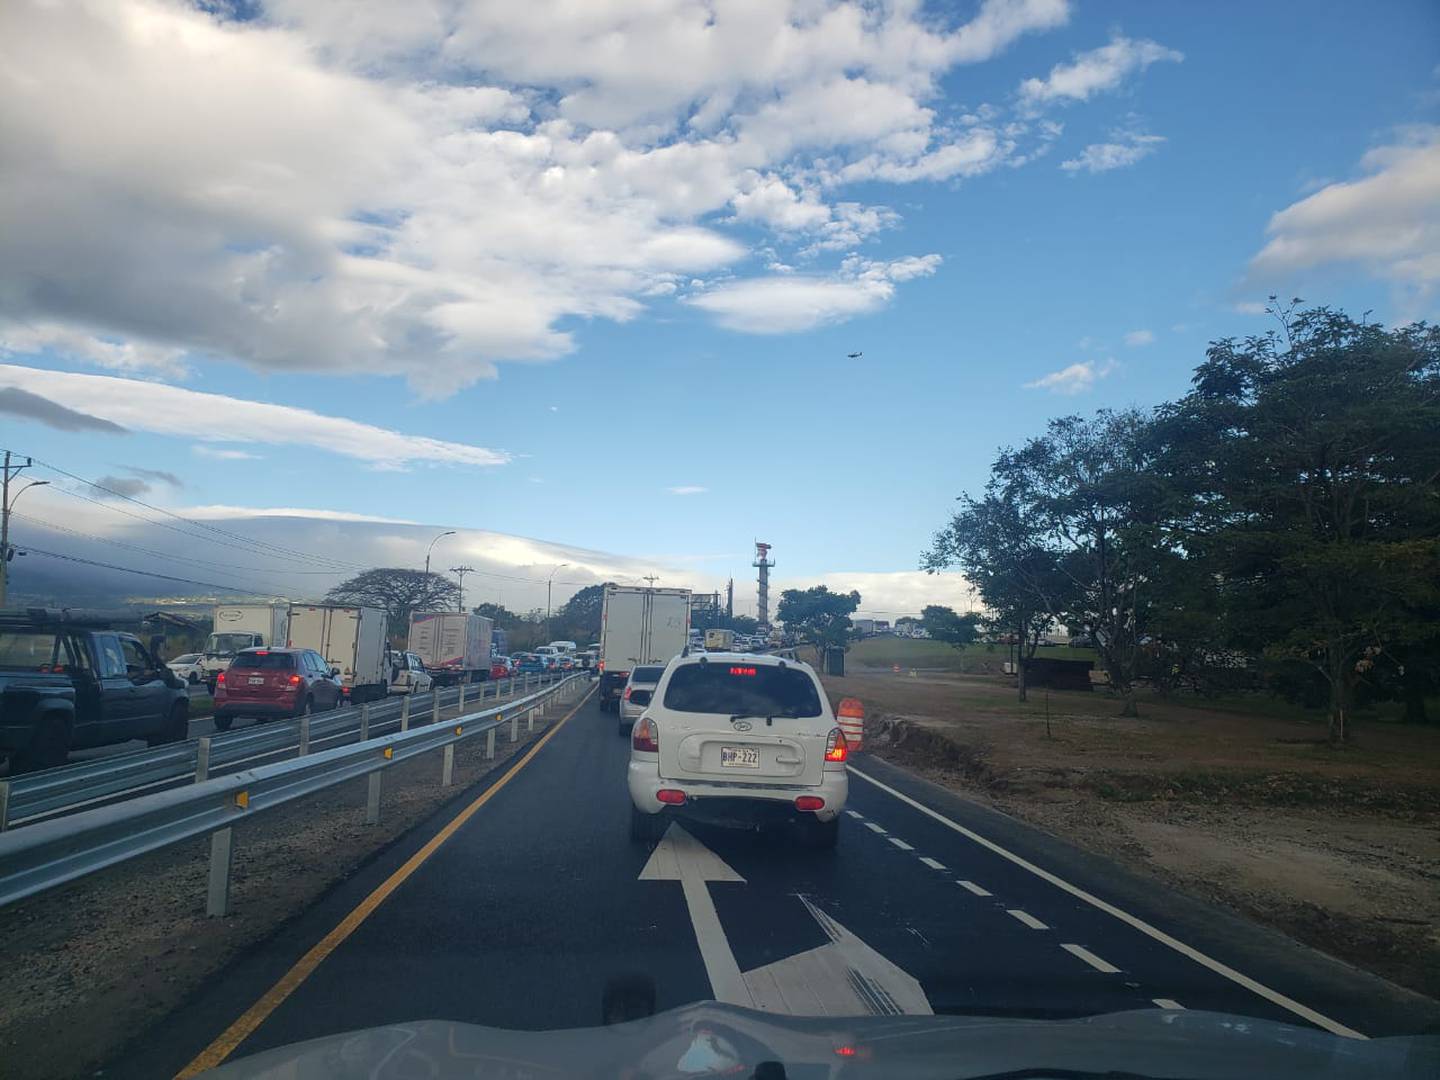 Usuarios aseguran que la situación del puente ocasiona más presas en la radial de Alajuela y ese tránsito además presiona el flujo en la pista. Foto: Israel Oconitrillo.